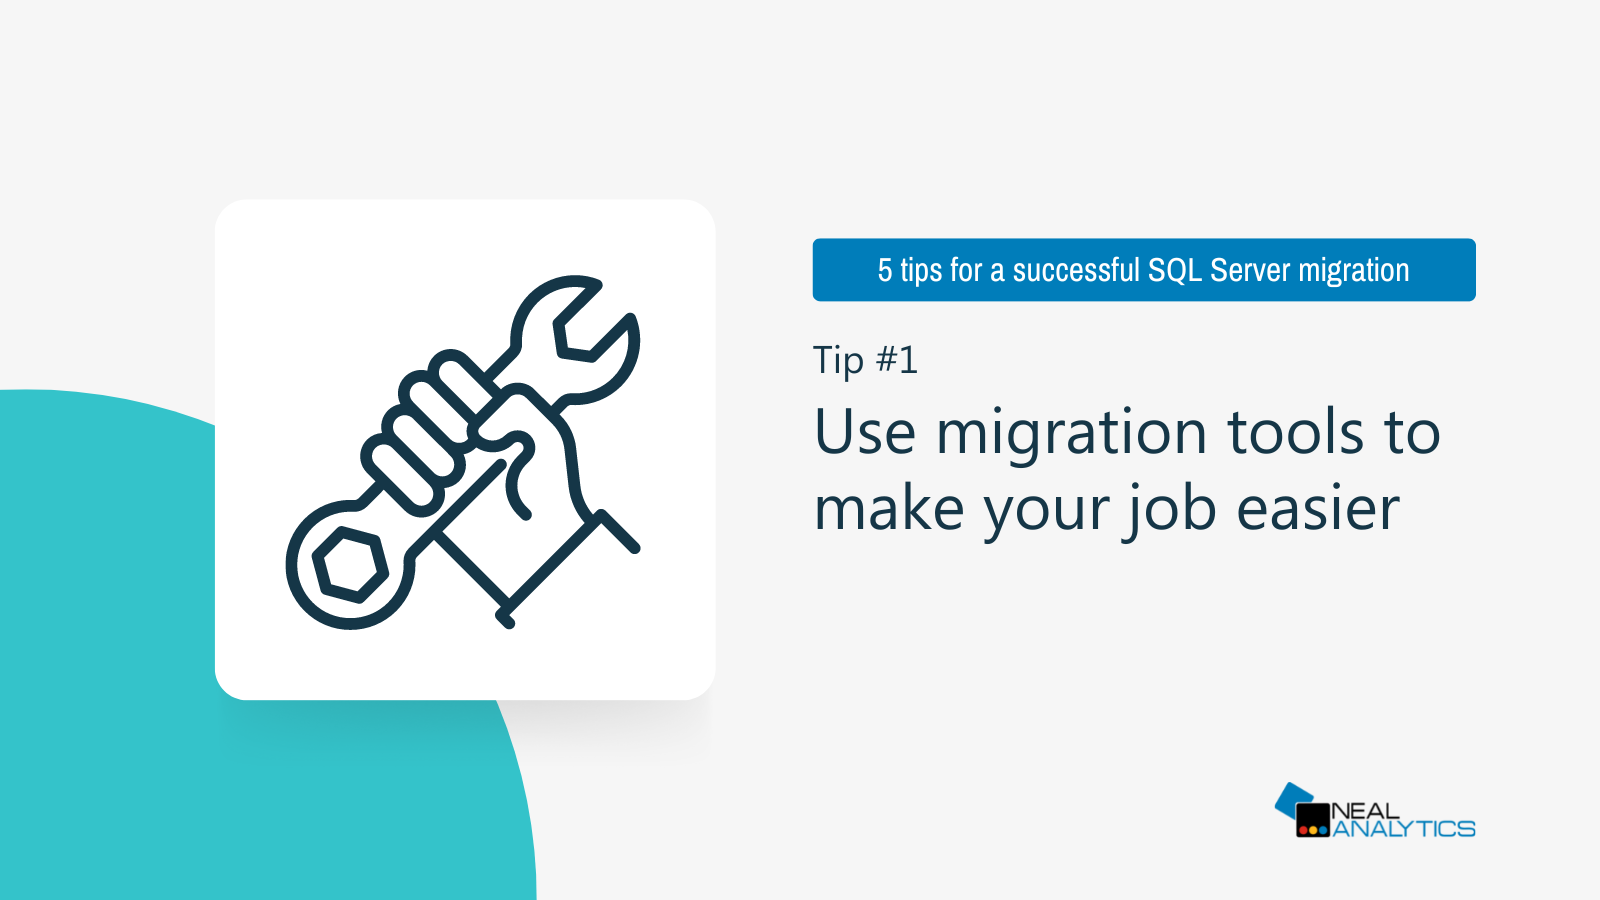 SQL Server Migration Tip 1: Use migration tools to make your job easier